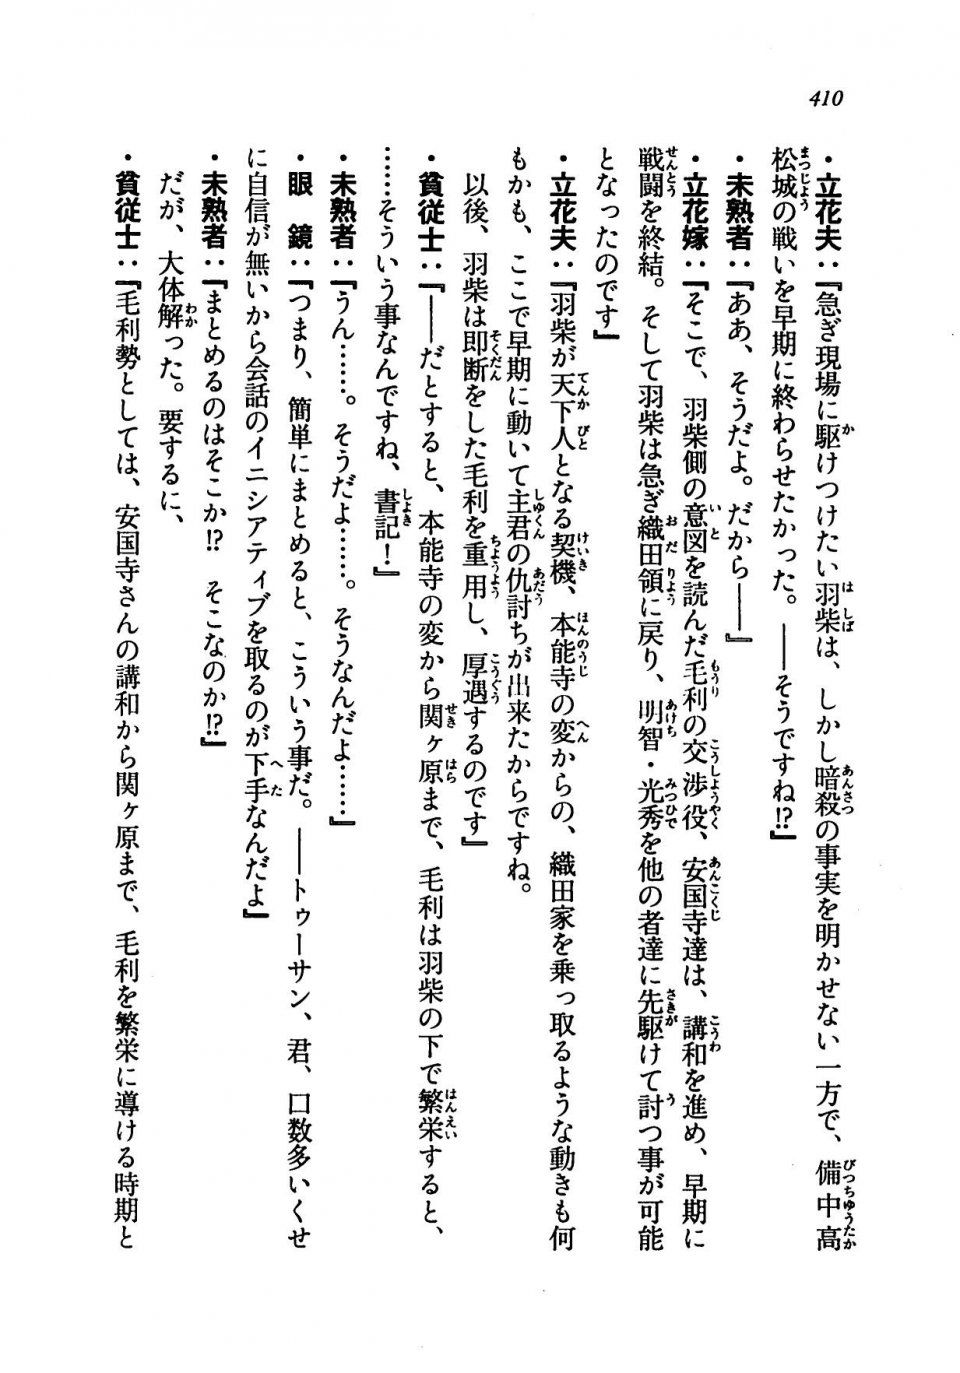 Kyoukai Senjou no Horizon LN Vol 19(8A) - Photo #410